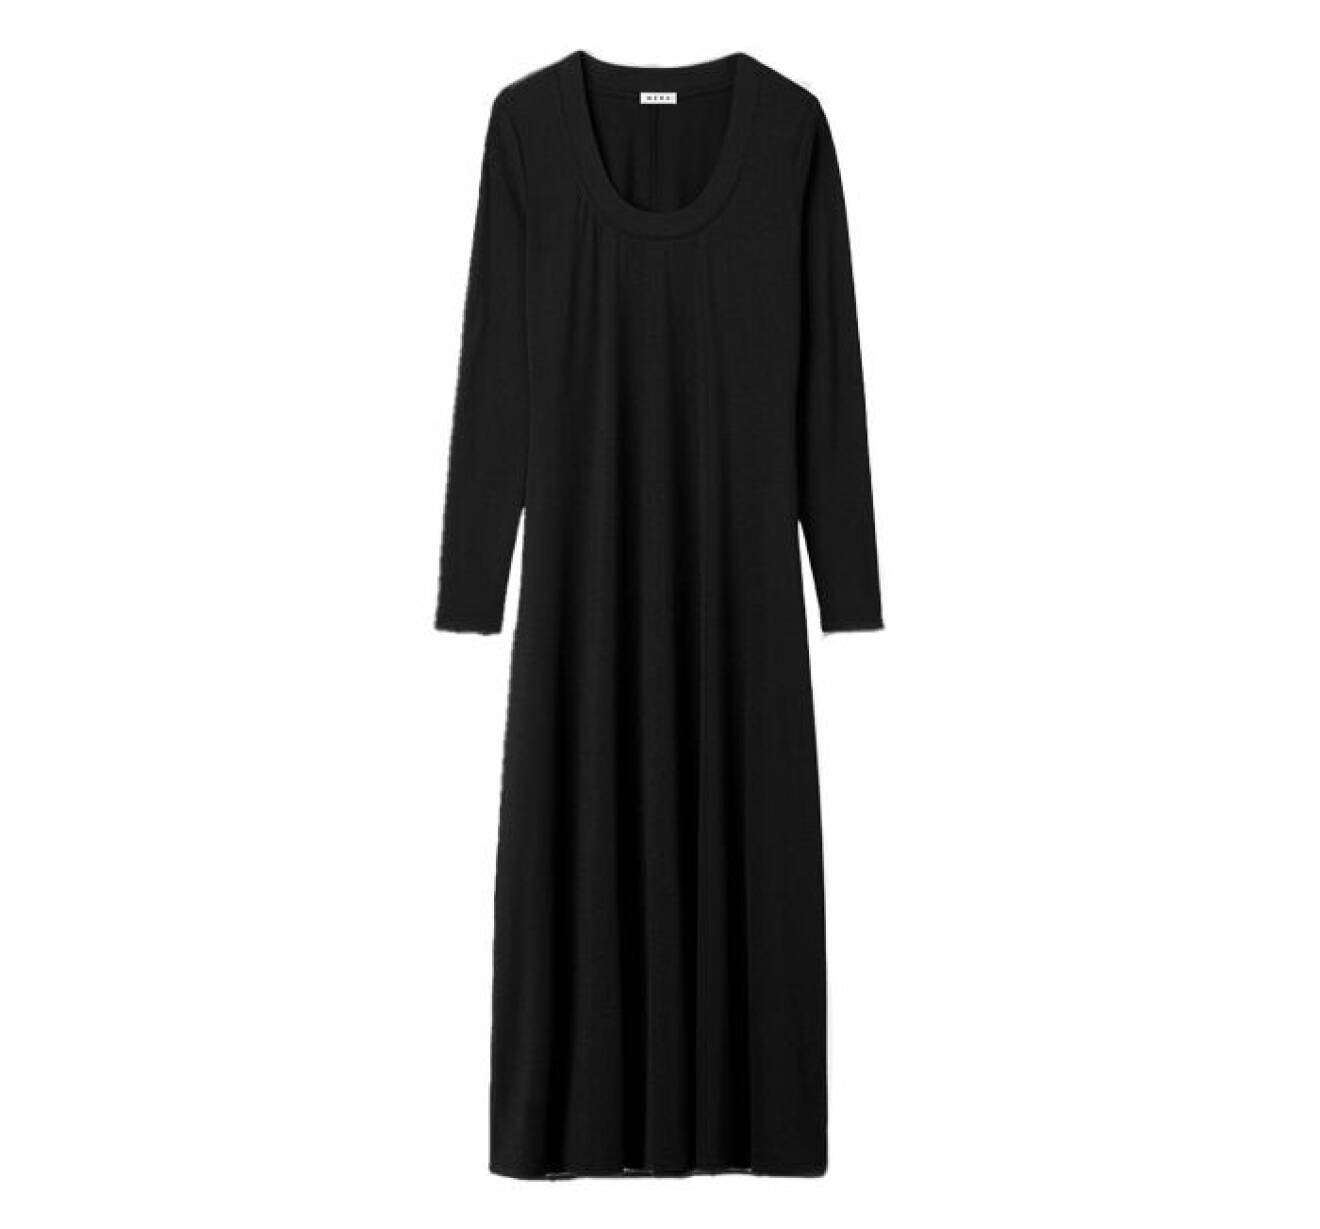 svart klänning i lång modell och med långa ärmar gjord i jersey från Wera